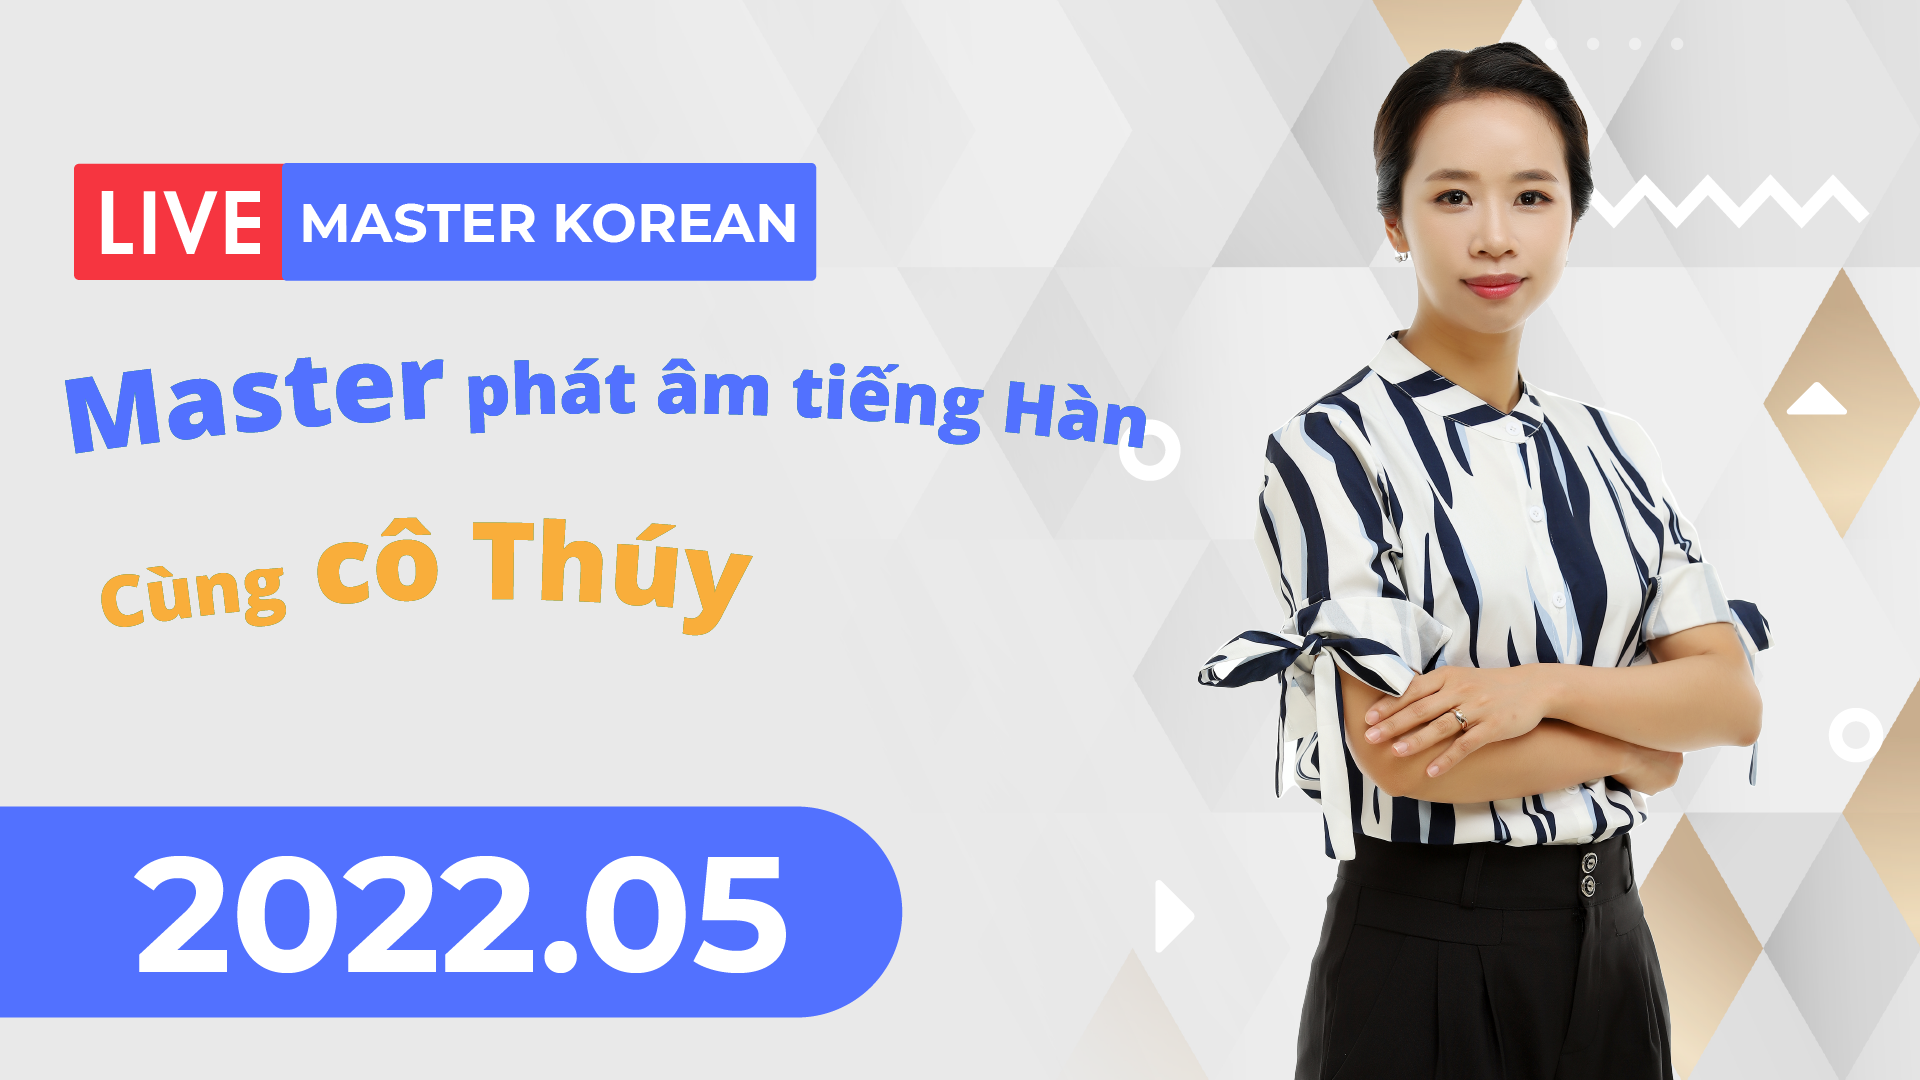 Facebook Livestream 2022.05 Master phát âm tiếng Hàn với cô Thúy